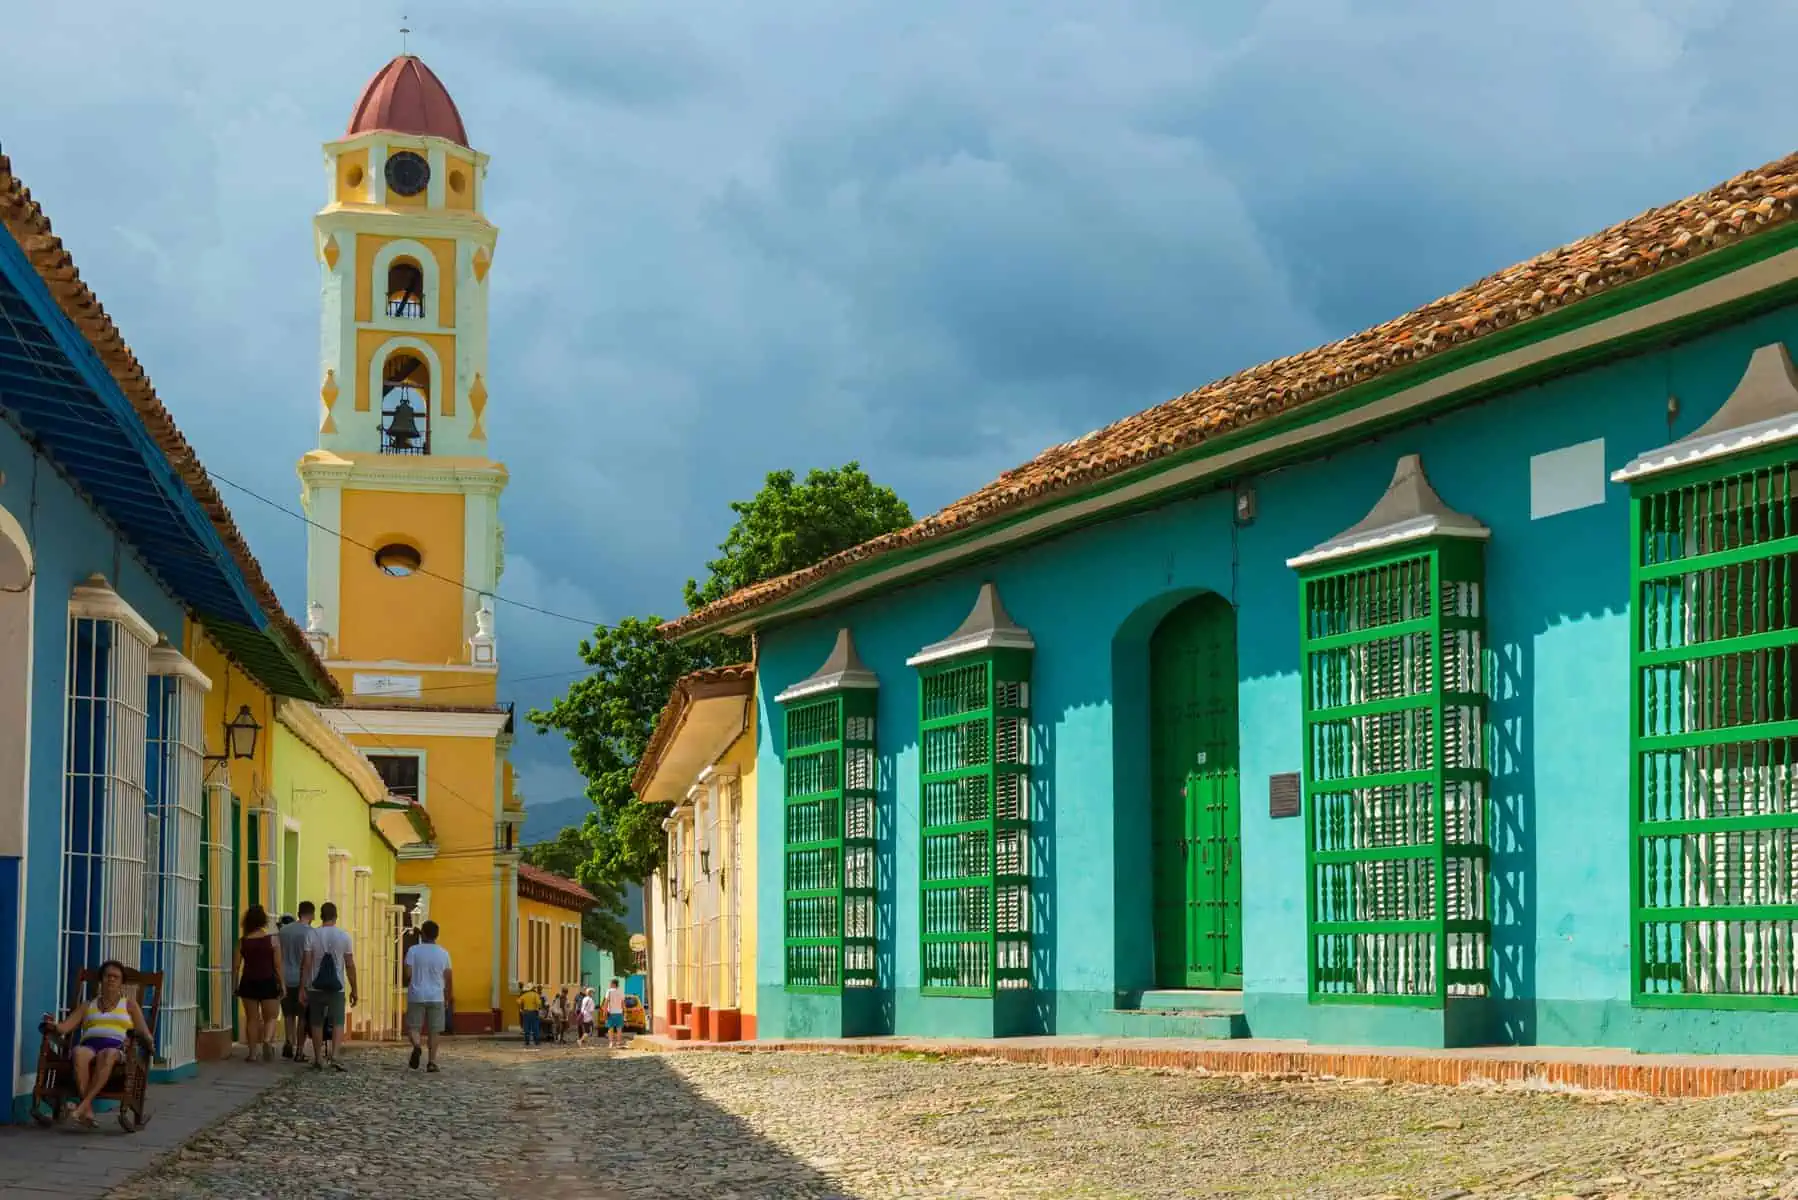 Trinidad busca ampliar Ofertas del Turismo en Cuba